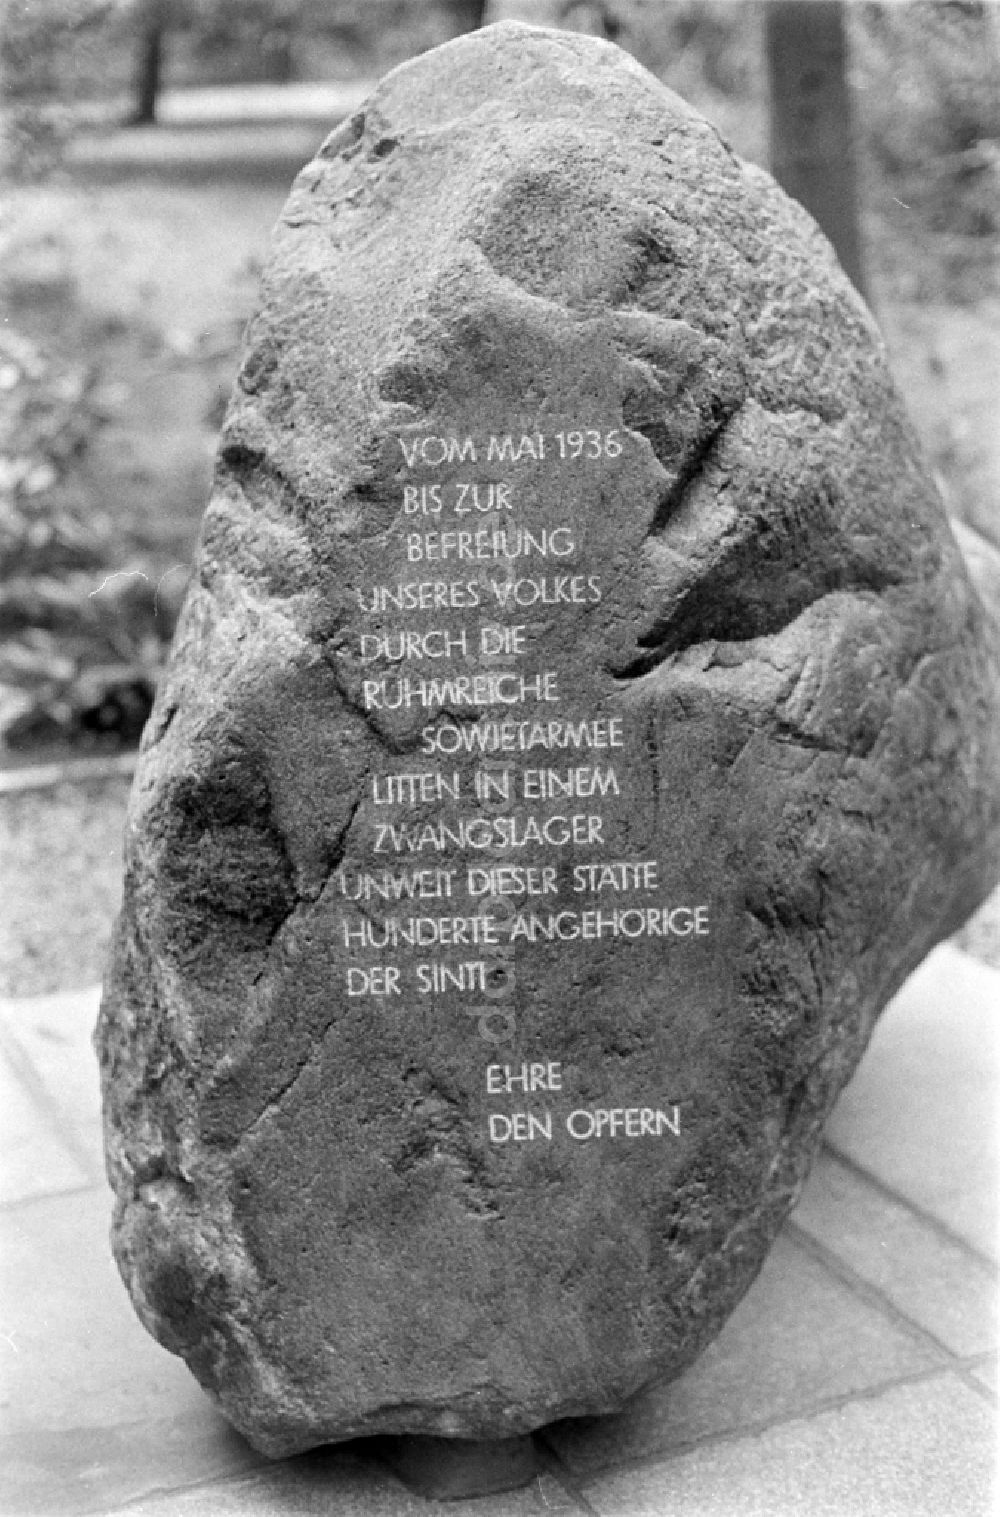 DDR-Bildarchiv: Berlin - Einweihung der Gedenkstätte für die Sinti-Opfer auf dem Marzahner Parkfriedhof in Ostberlin in der DDR